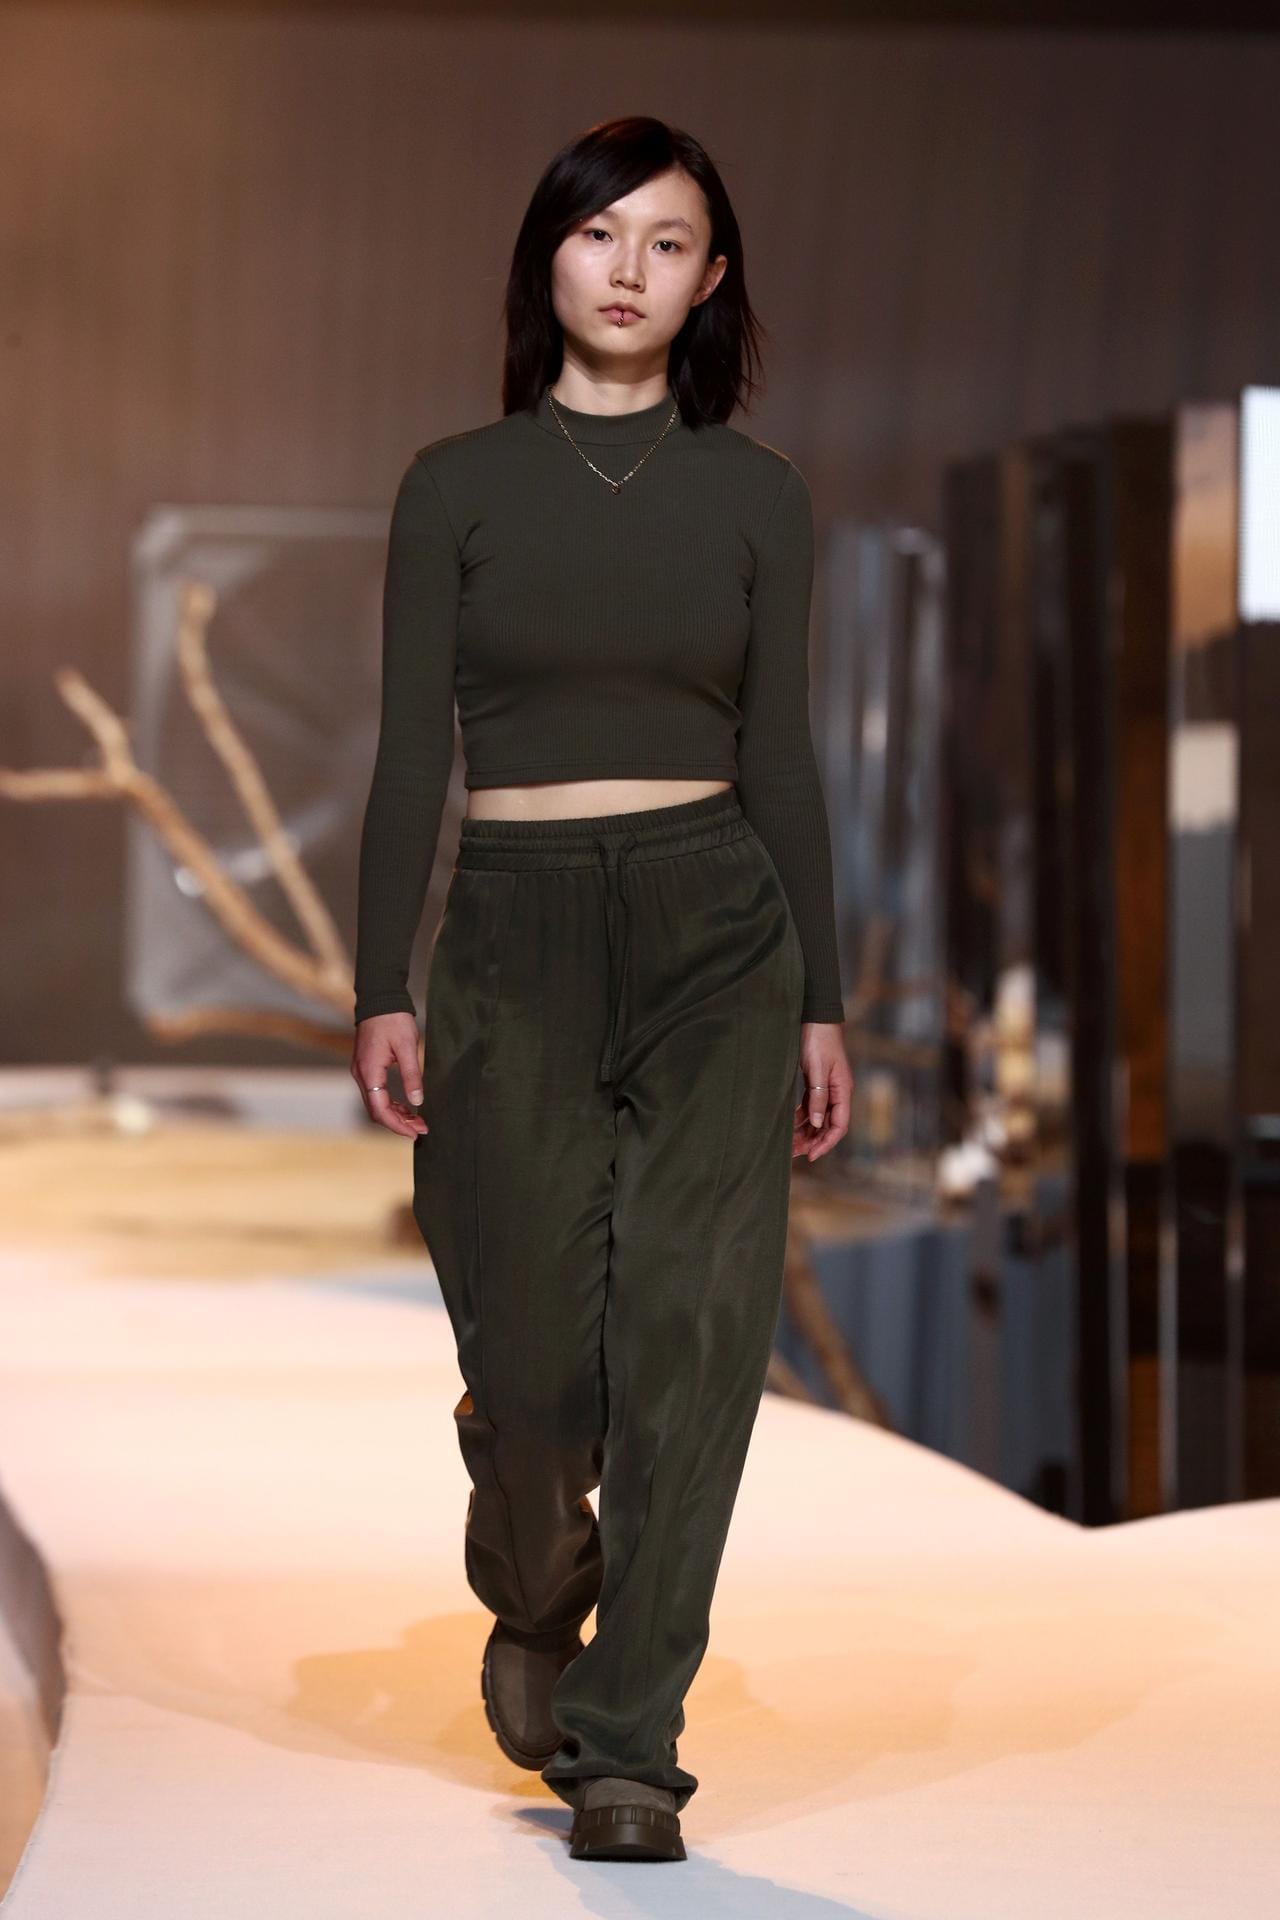 Lena Meyer-Landrut präsentiert ihre neueste Kollektion bei der About You Fashion Week in Berlin.